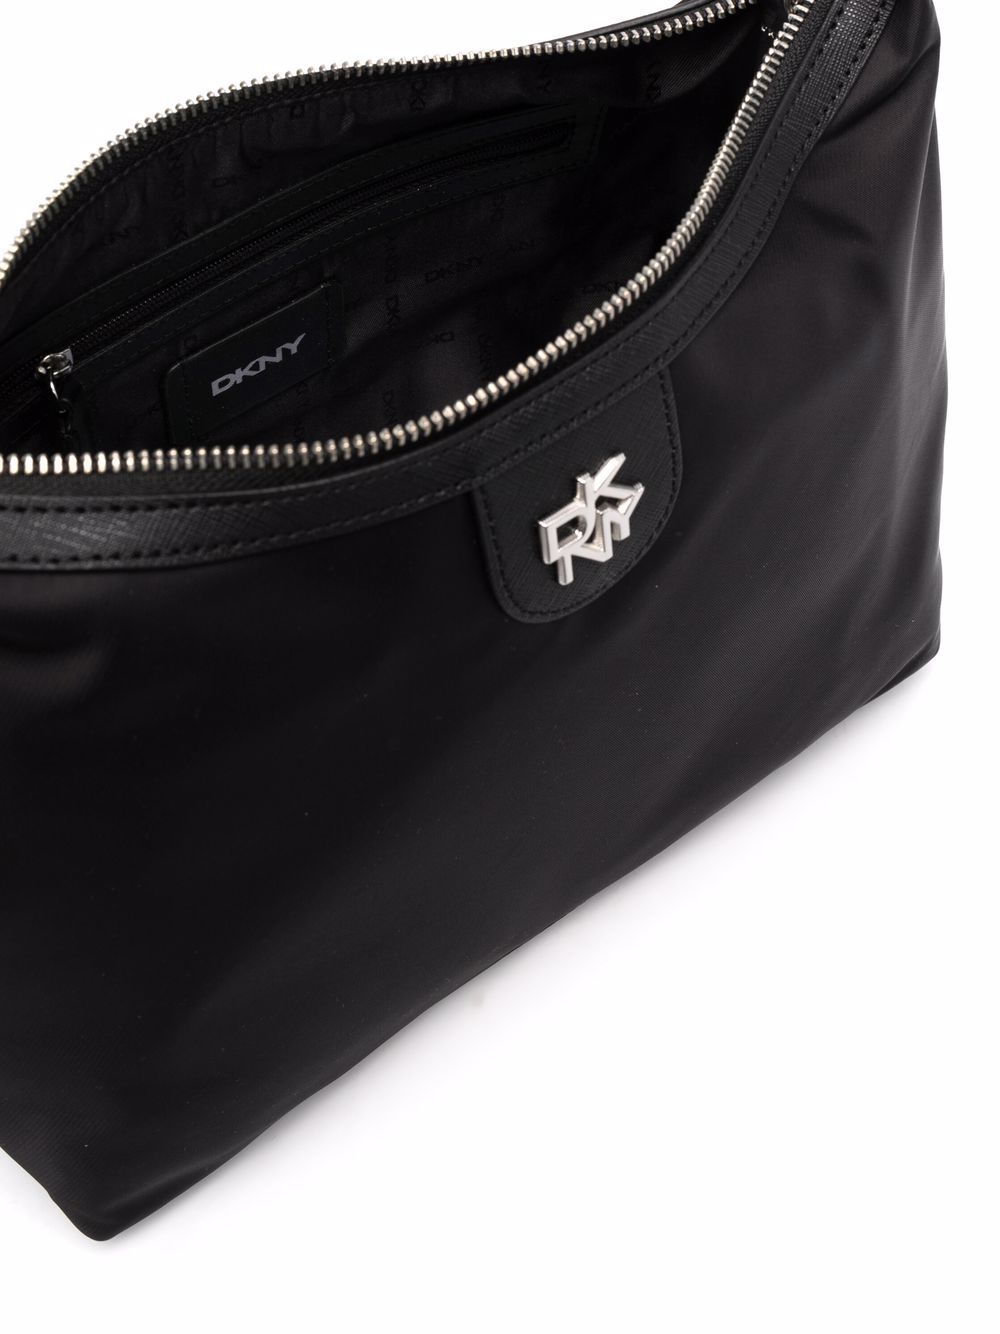 DKNY Medium Carol Black Logo Tote Bag